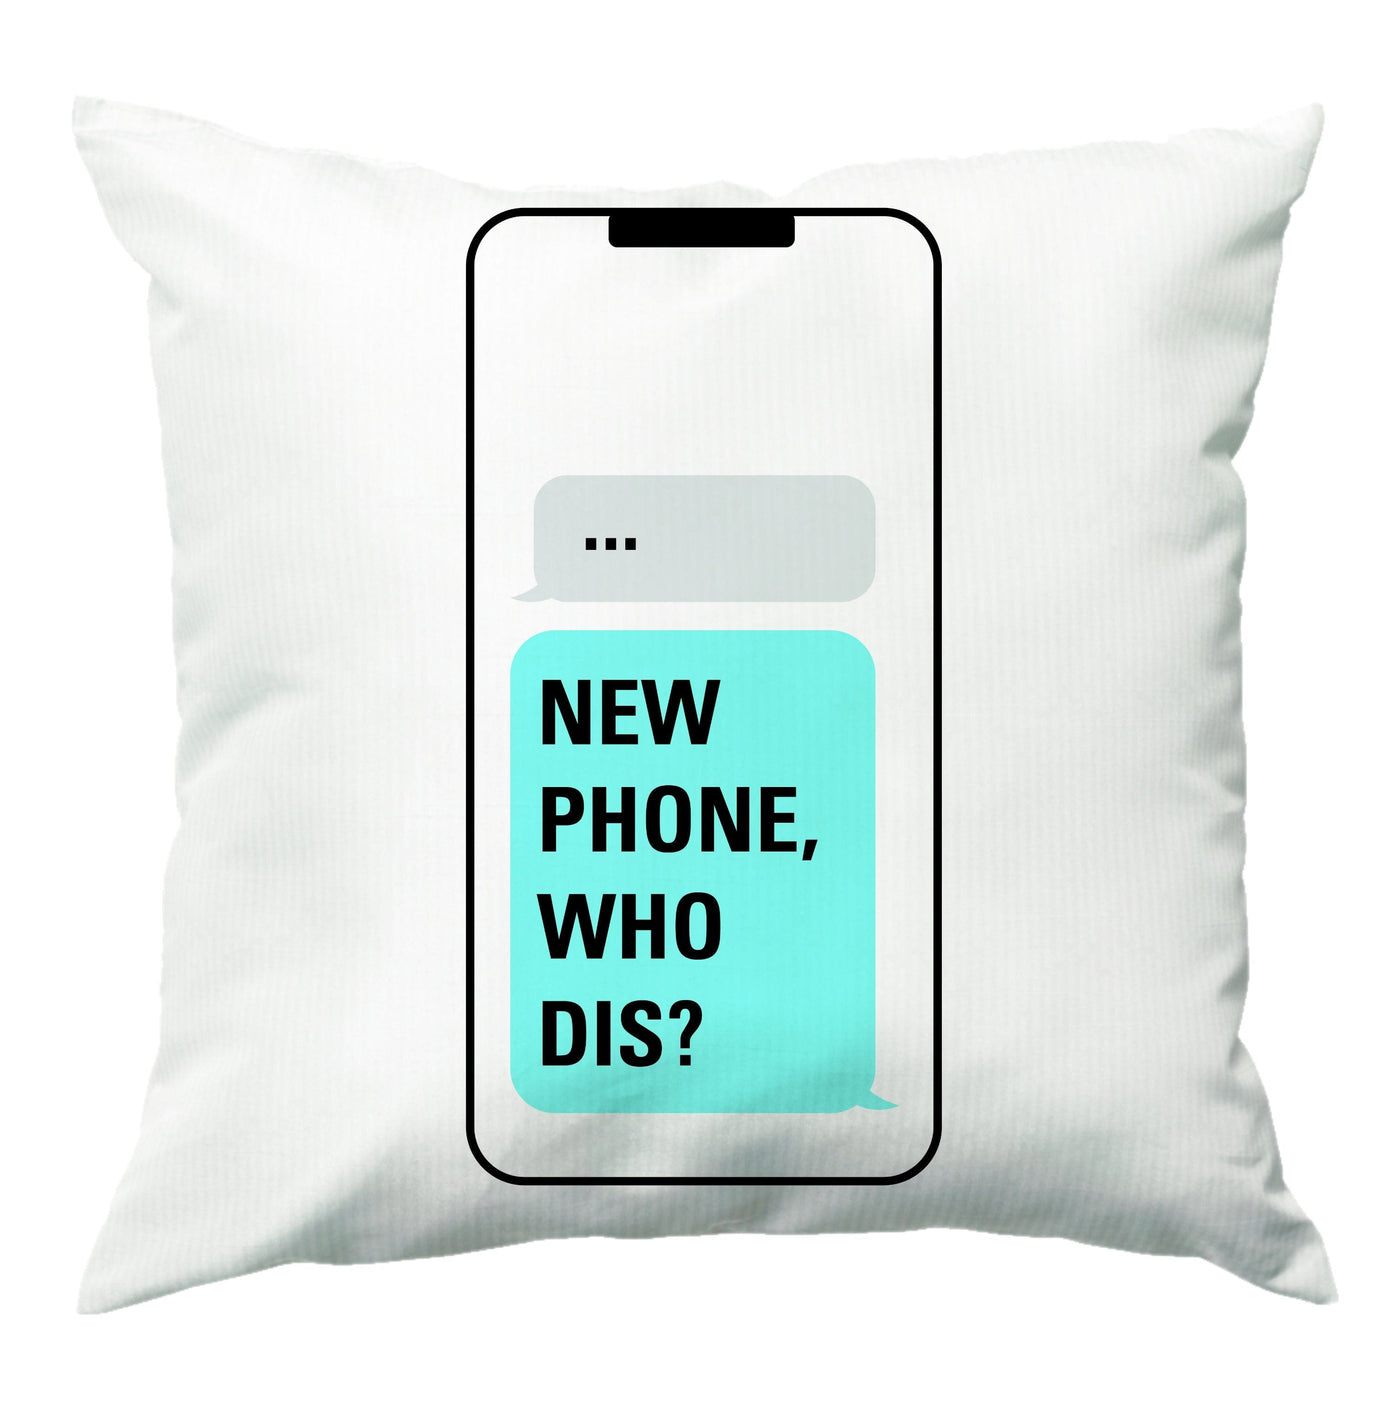 New Phone, Who Dis - Brooklyn Nine-Nine Cushion